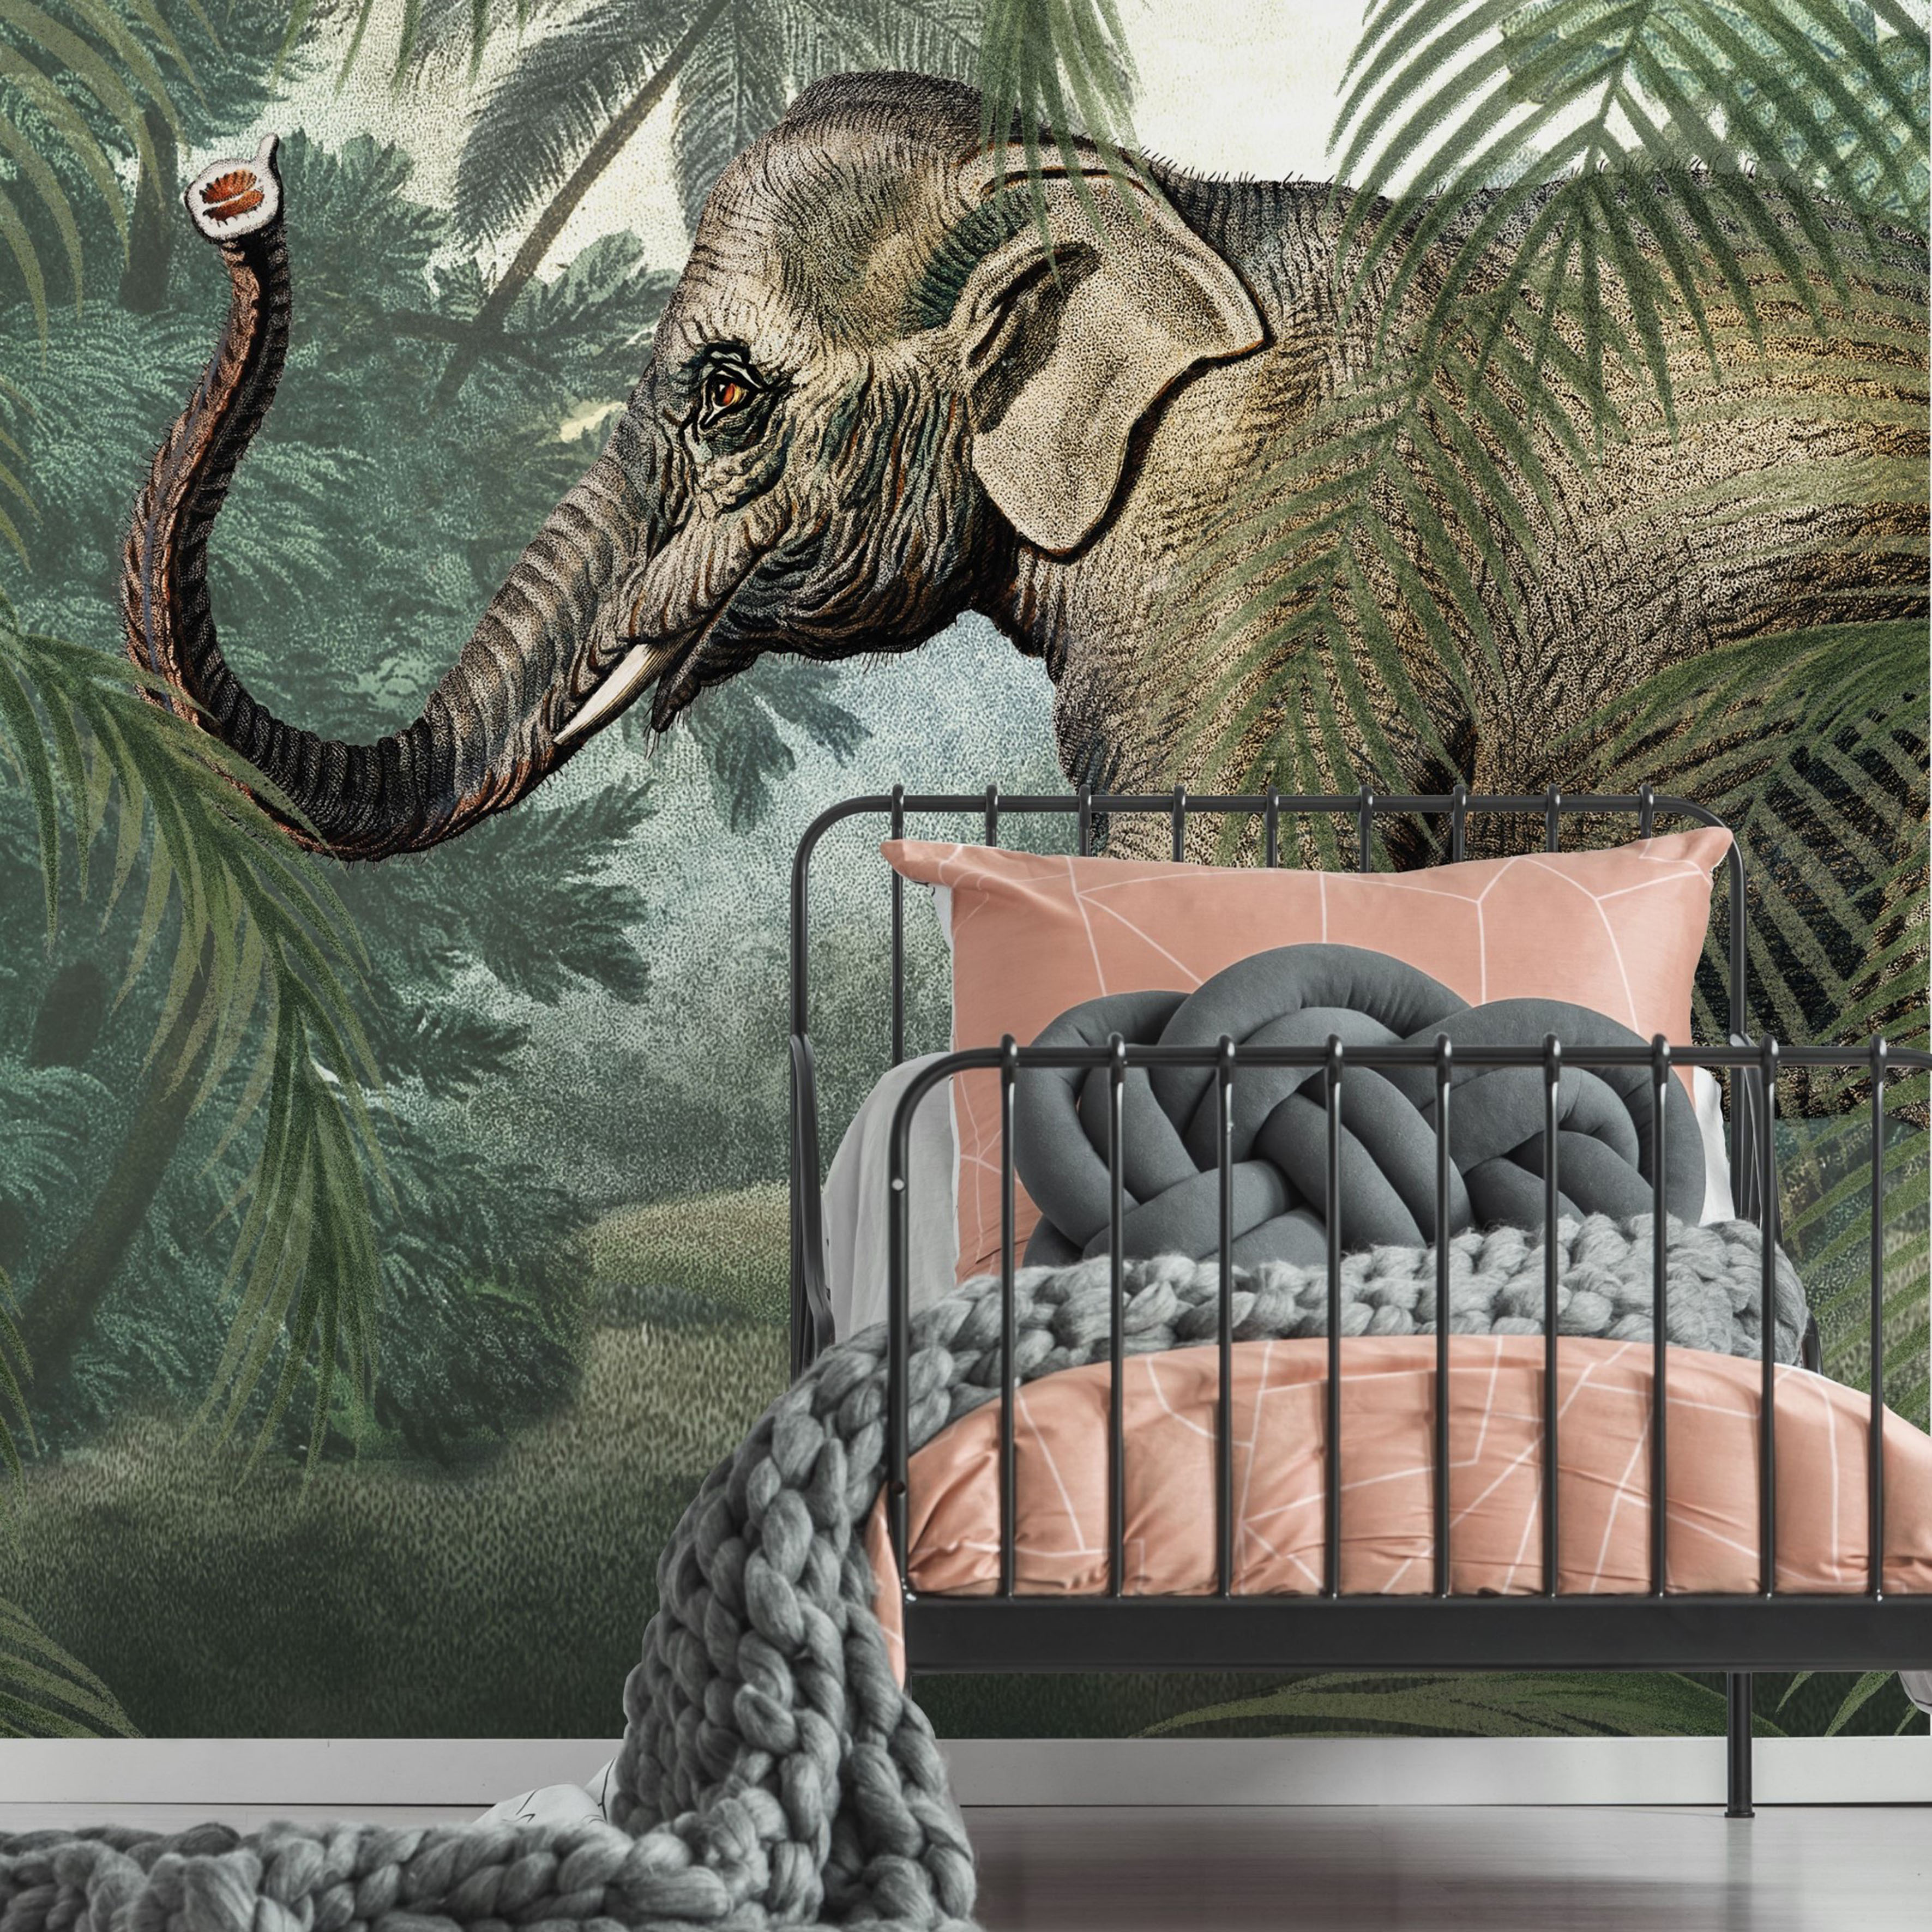 Art for the home Fototapete "Elefant", animal print 2